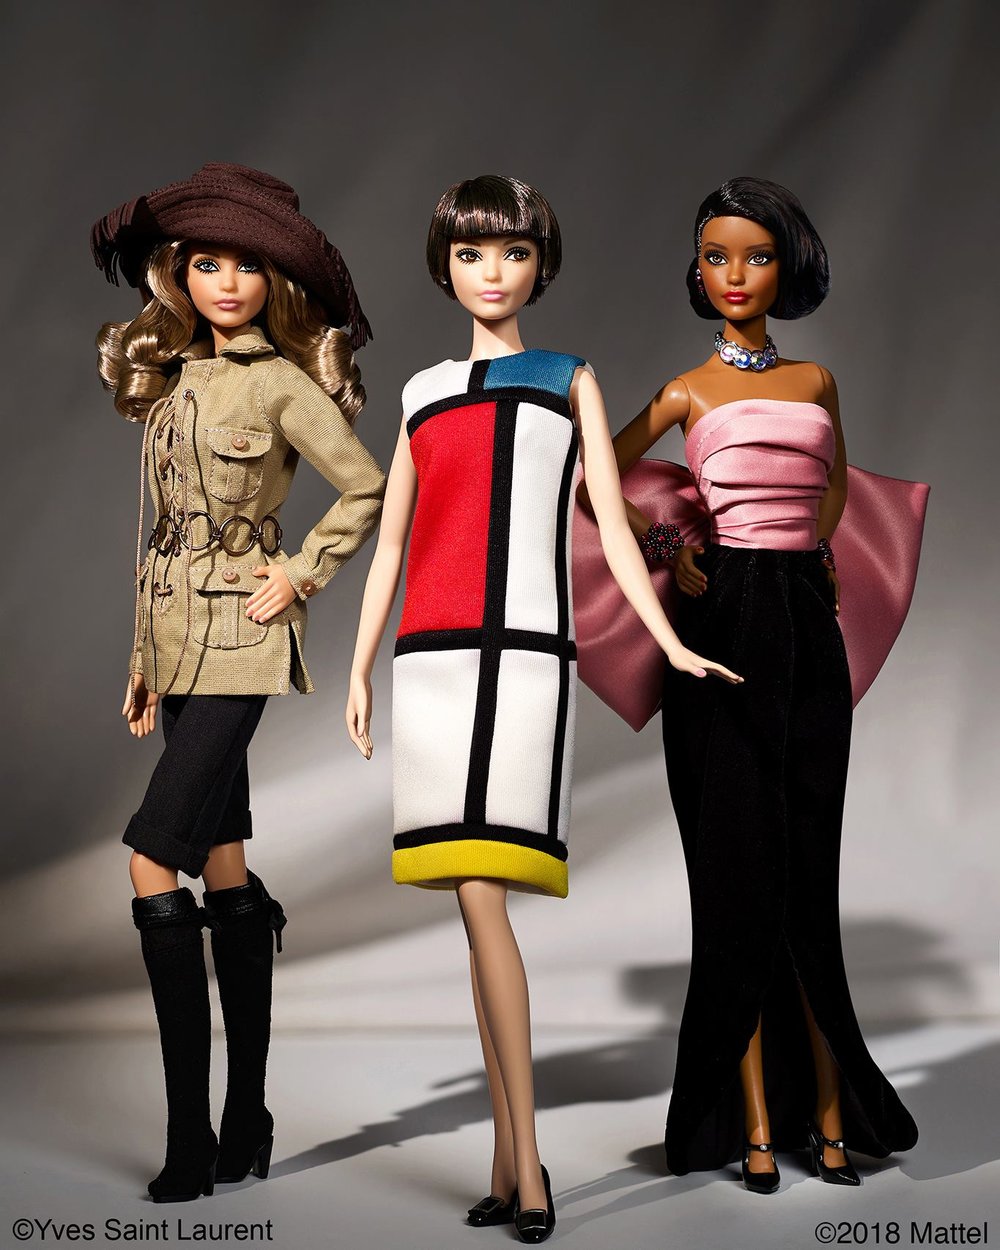 Yves Saint Laurent Barbie dolls - a 